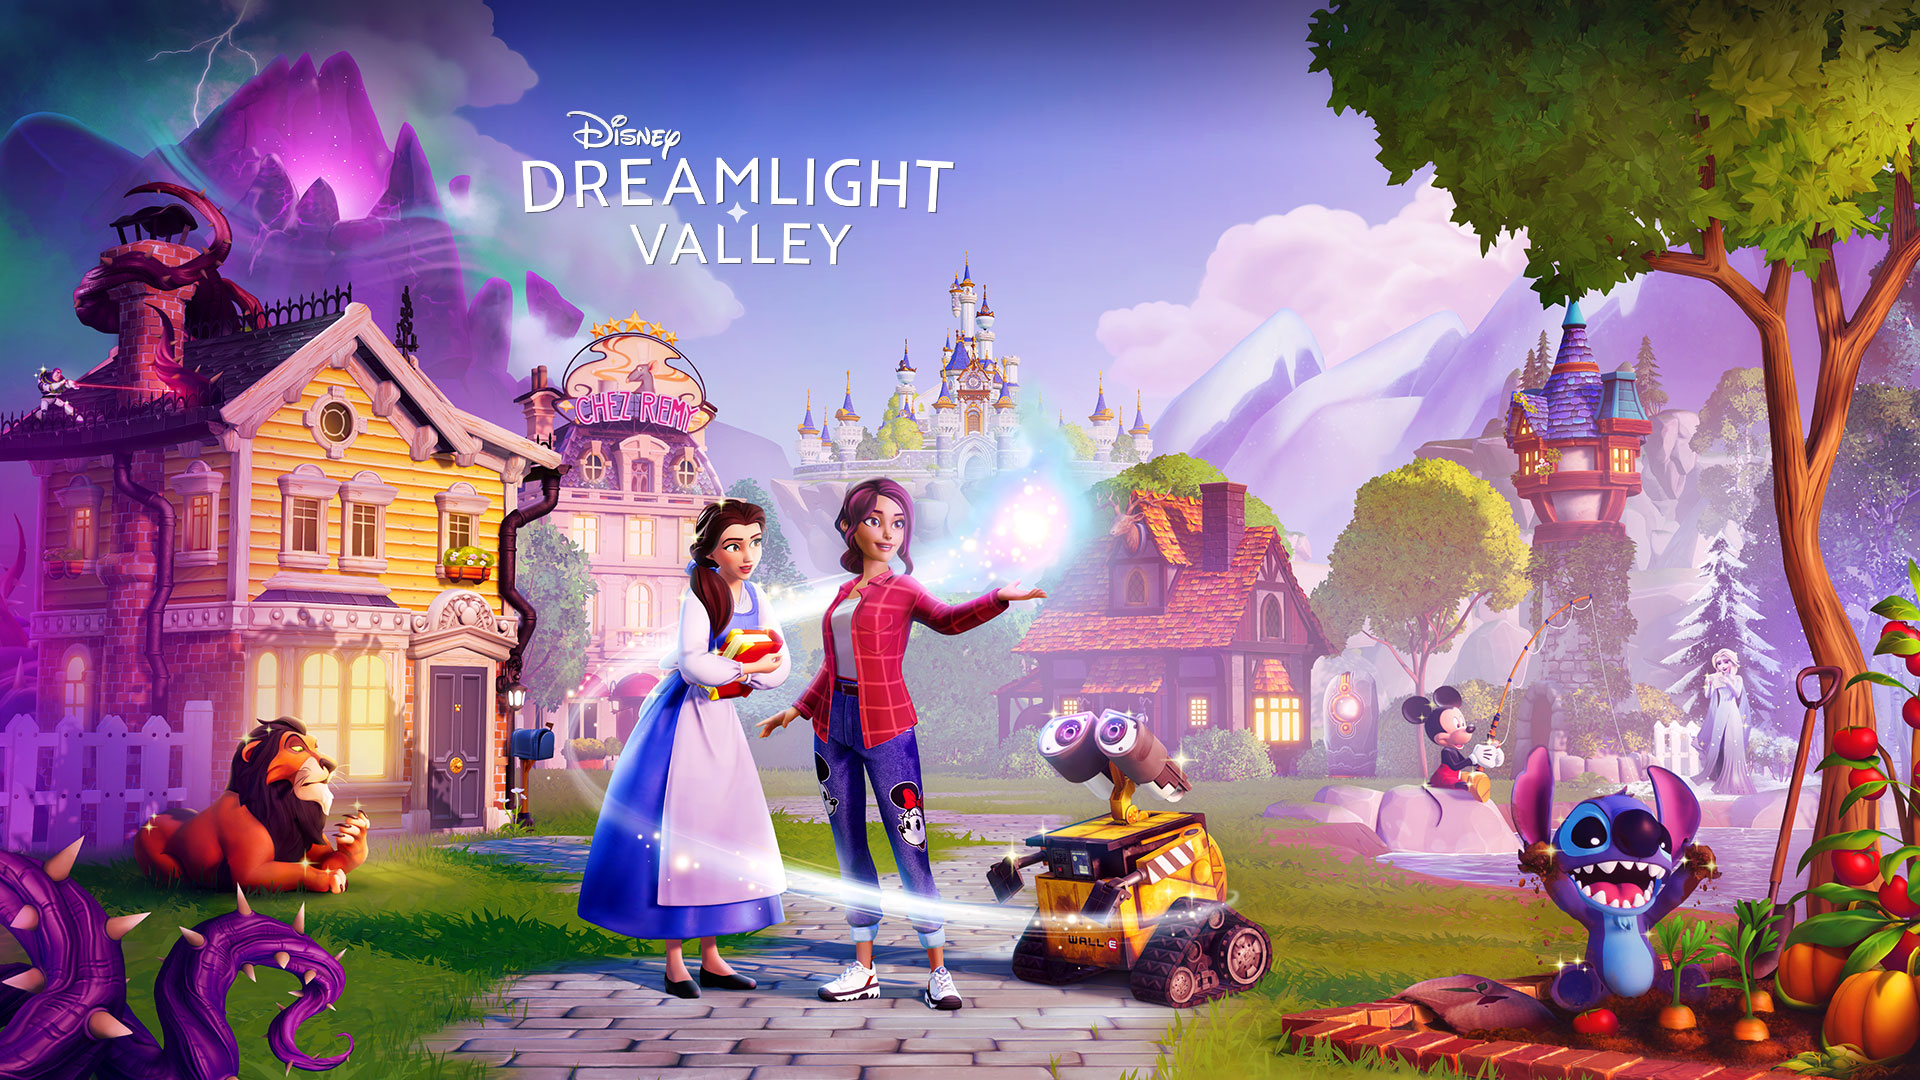 Disney Dreamlight Valley, personaggi Disney come Belle e Wall-E riuniti intorno a un giocatore in una pittoresca cittadina. 